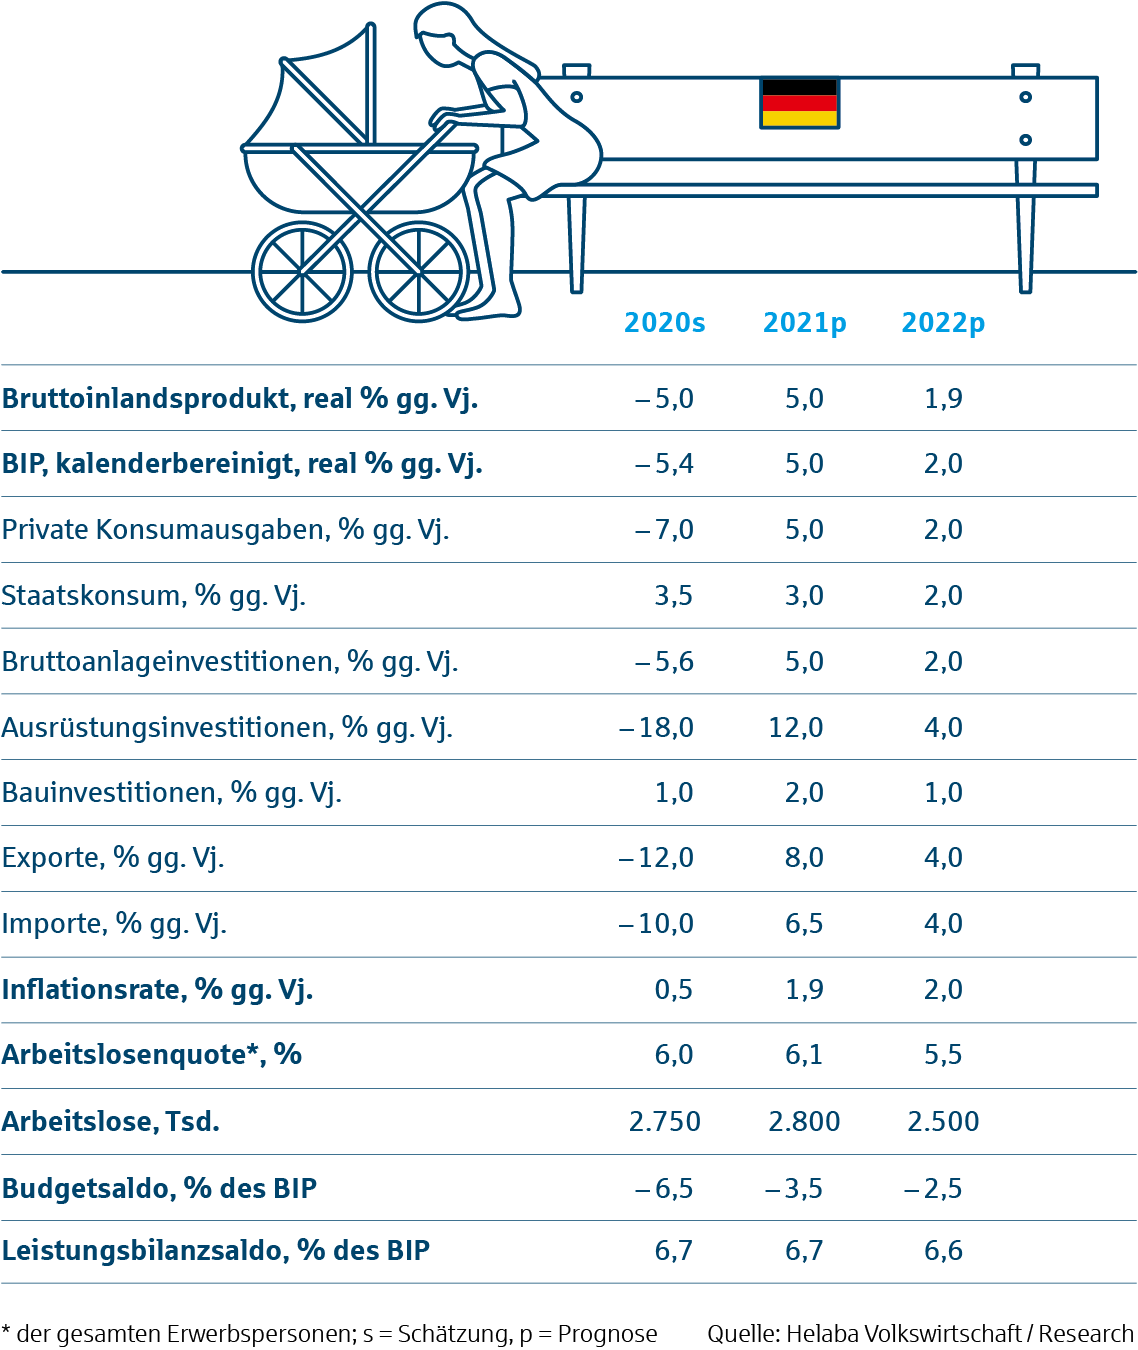 Prognosetabelle Deutschland - Märkte und Trends 2021 